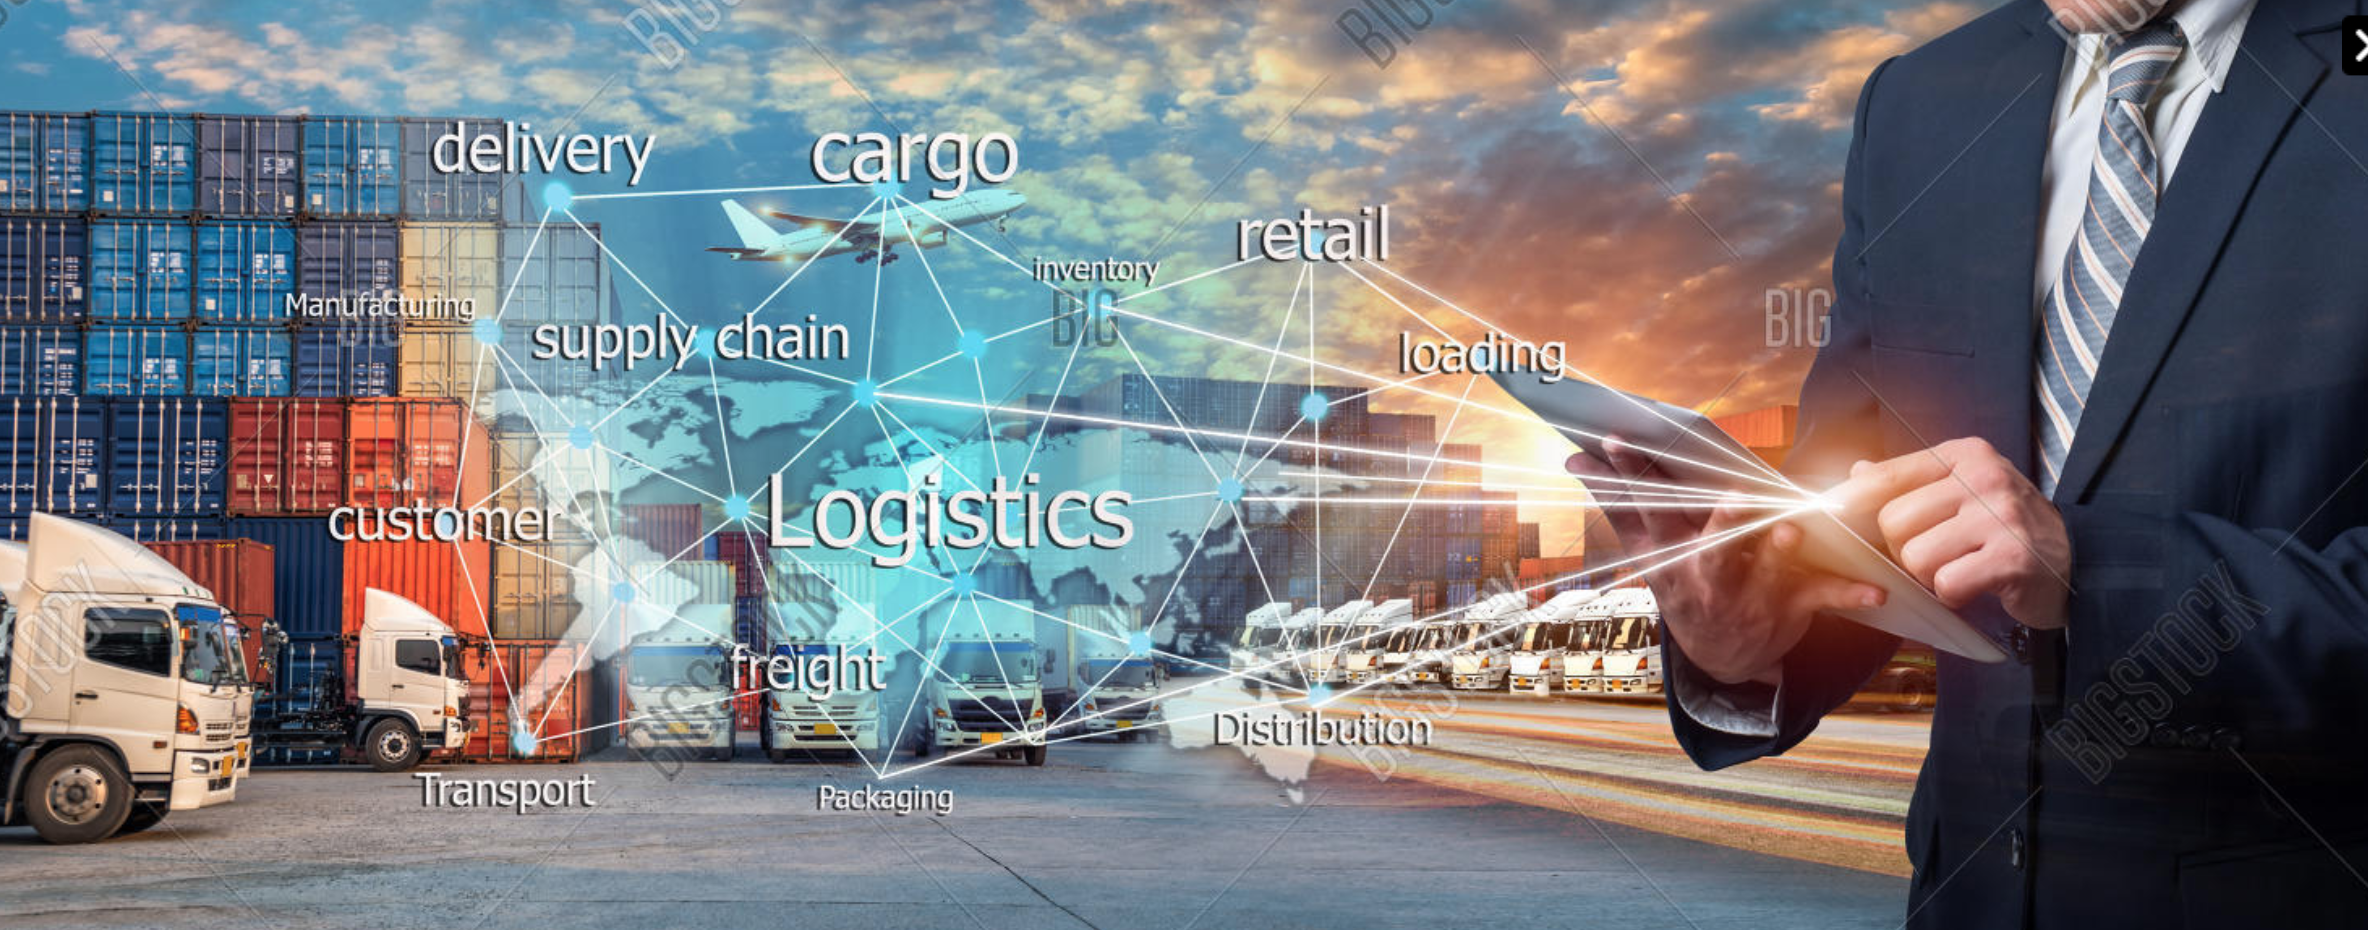 global logistics technology mindmap